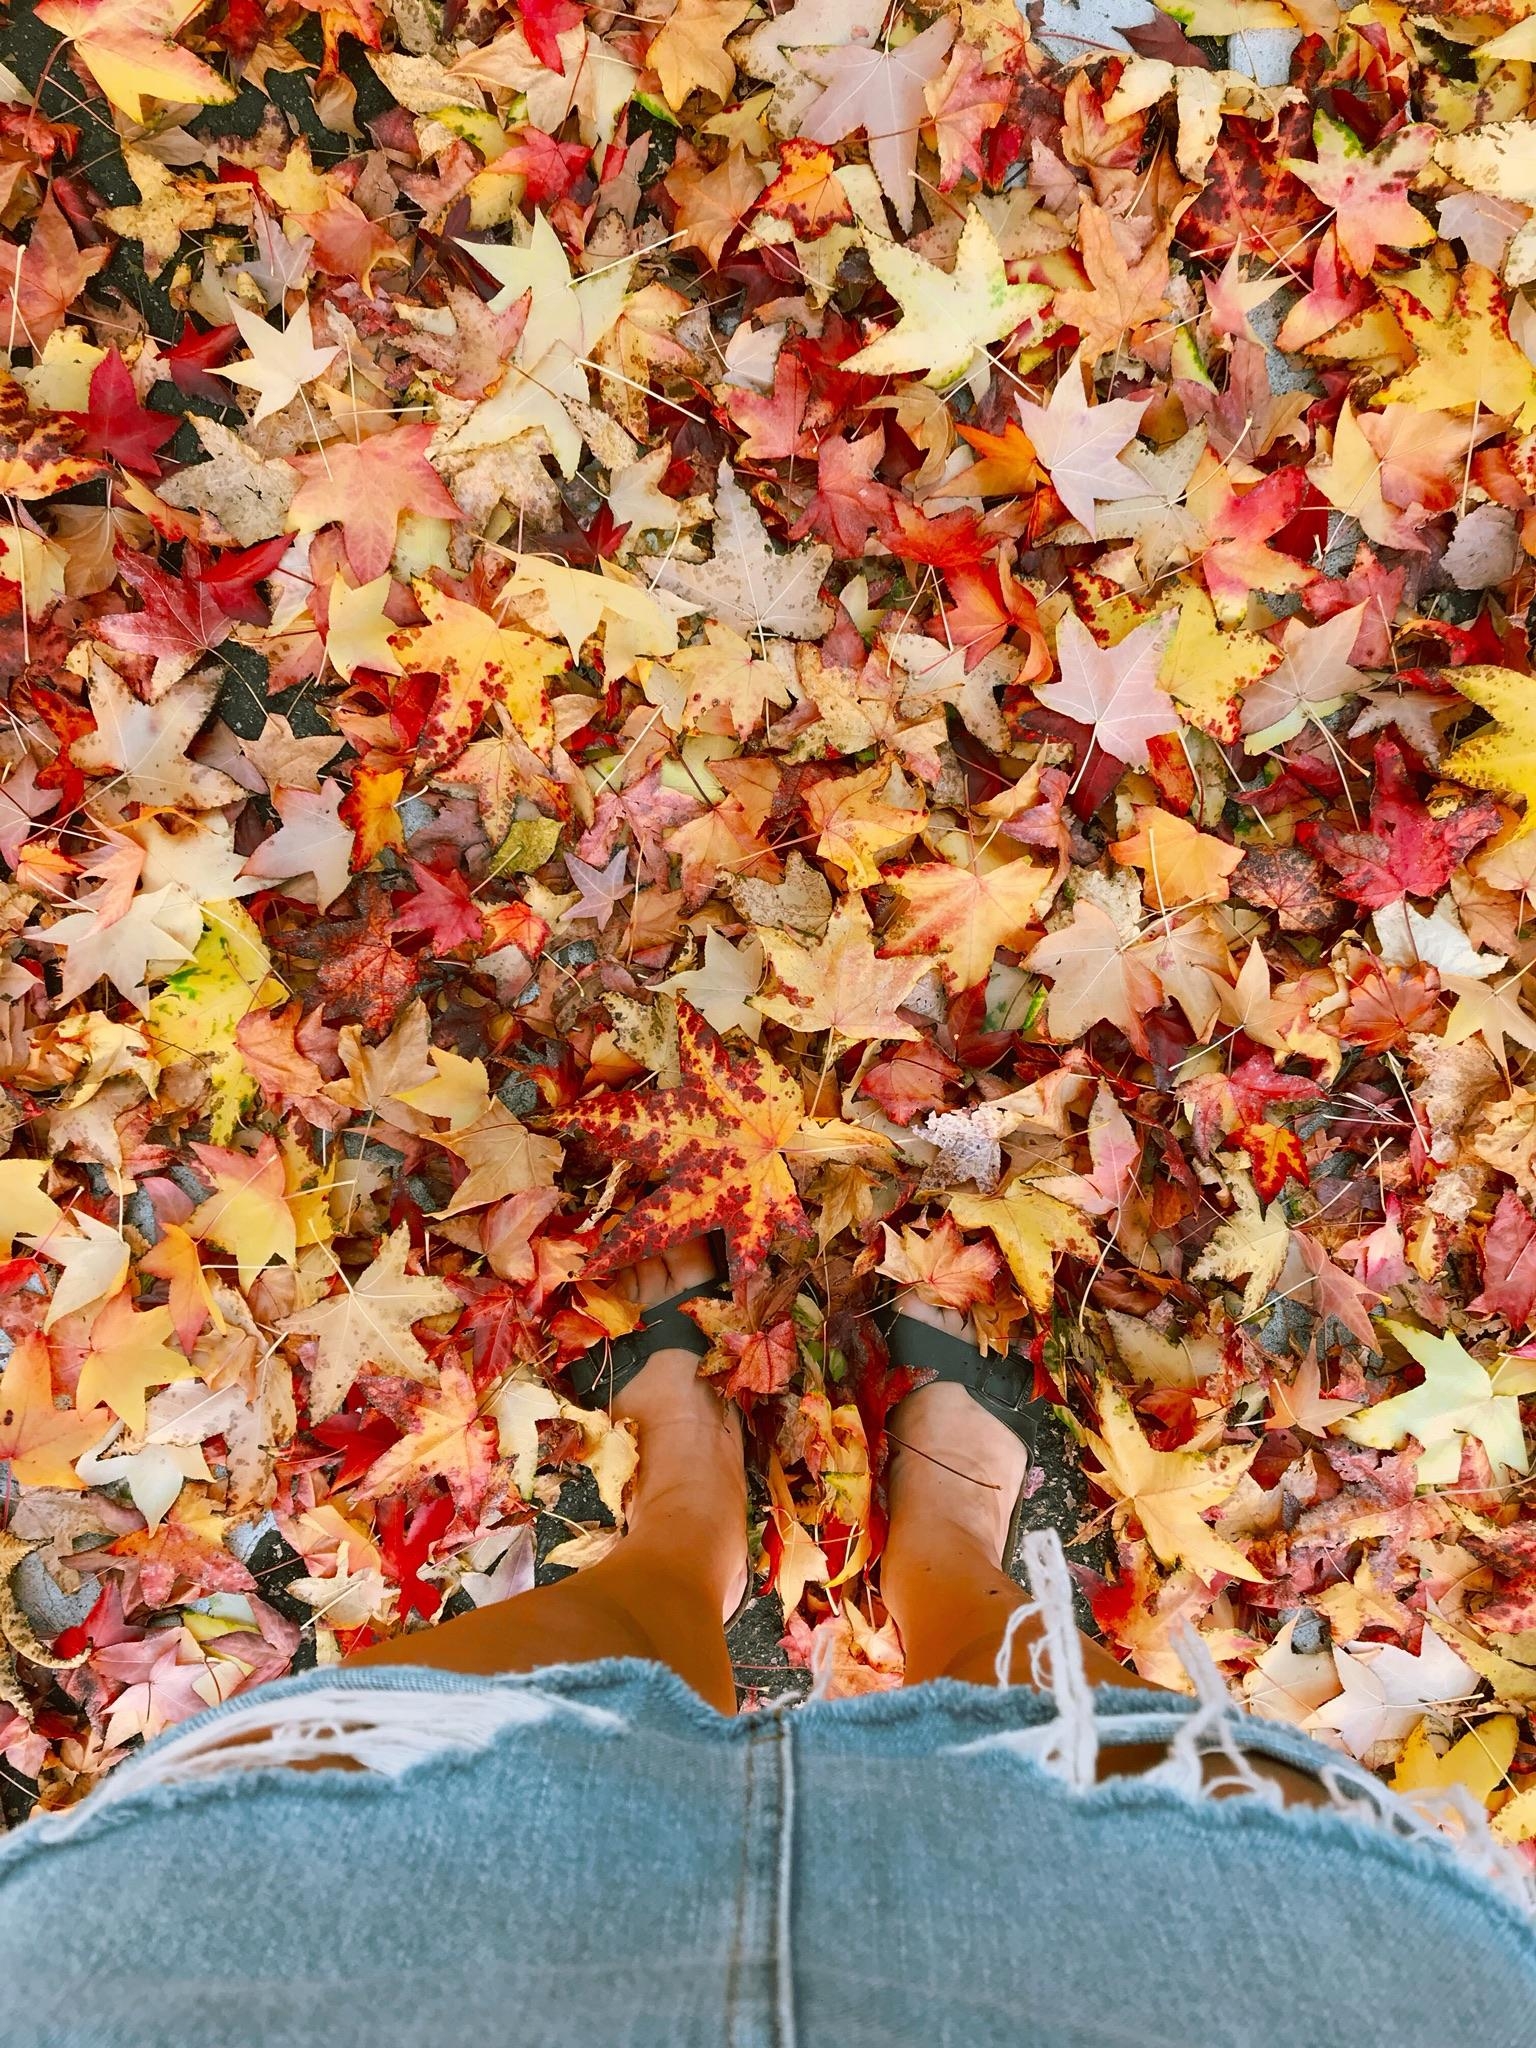 autumn sandals. #herbst #leaves #summervibes in #october #goldenerherbst @birkenstock